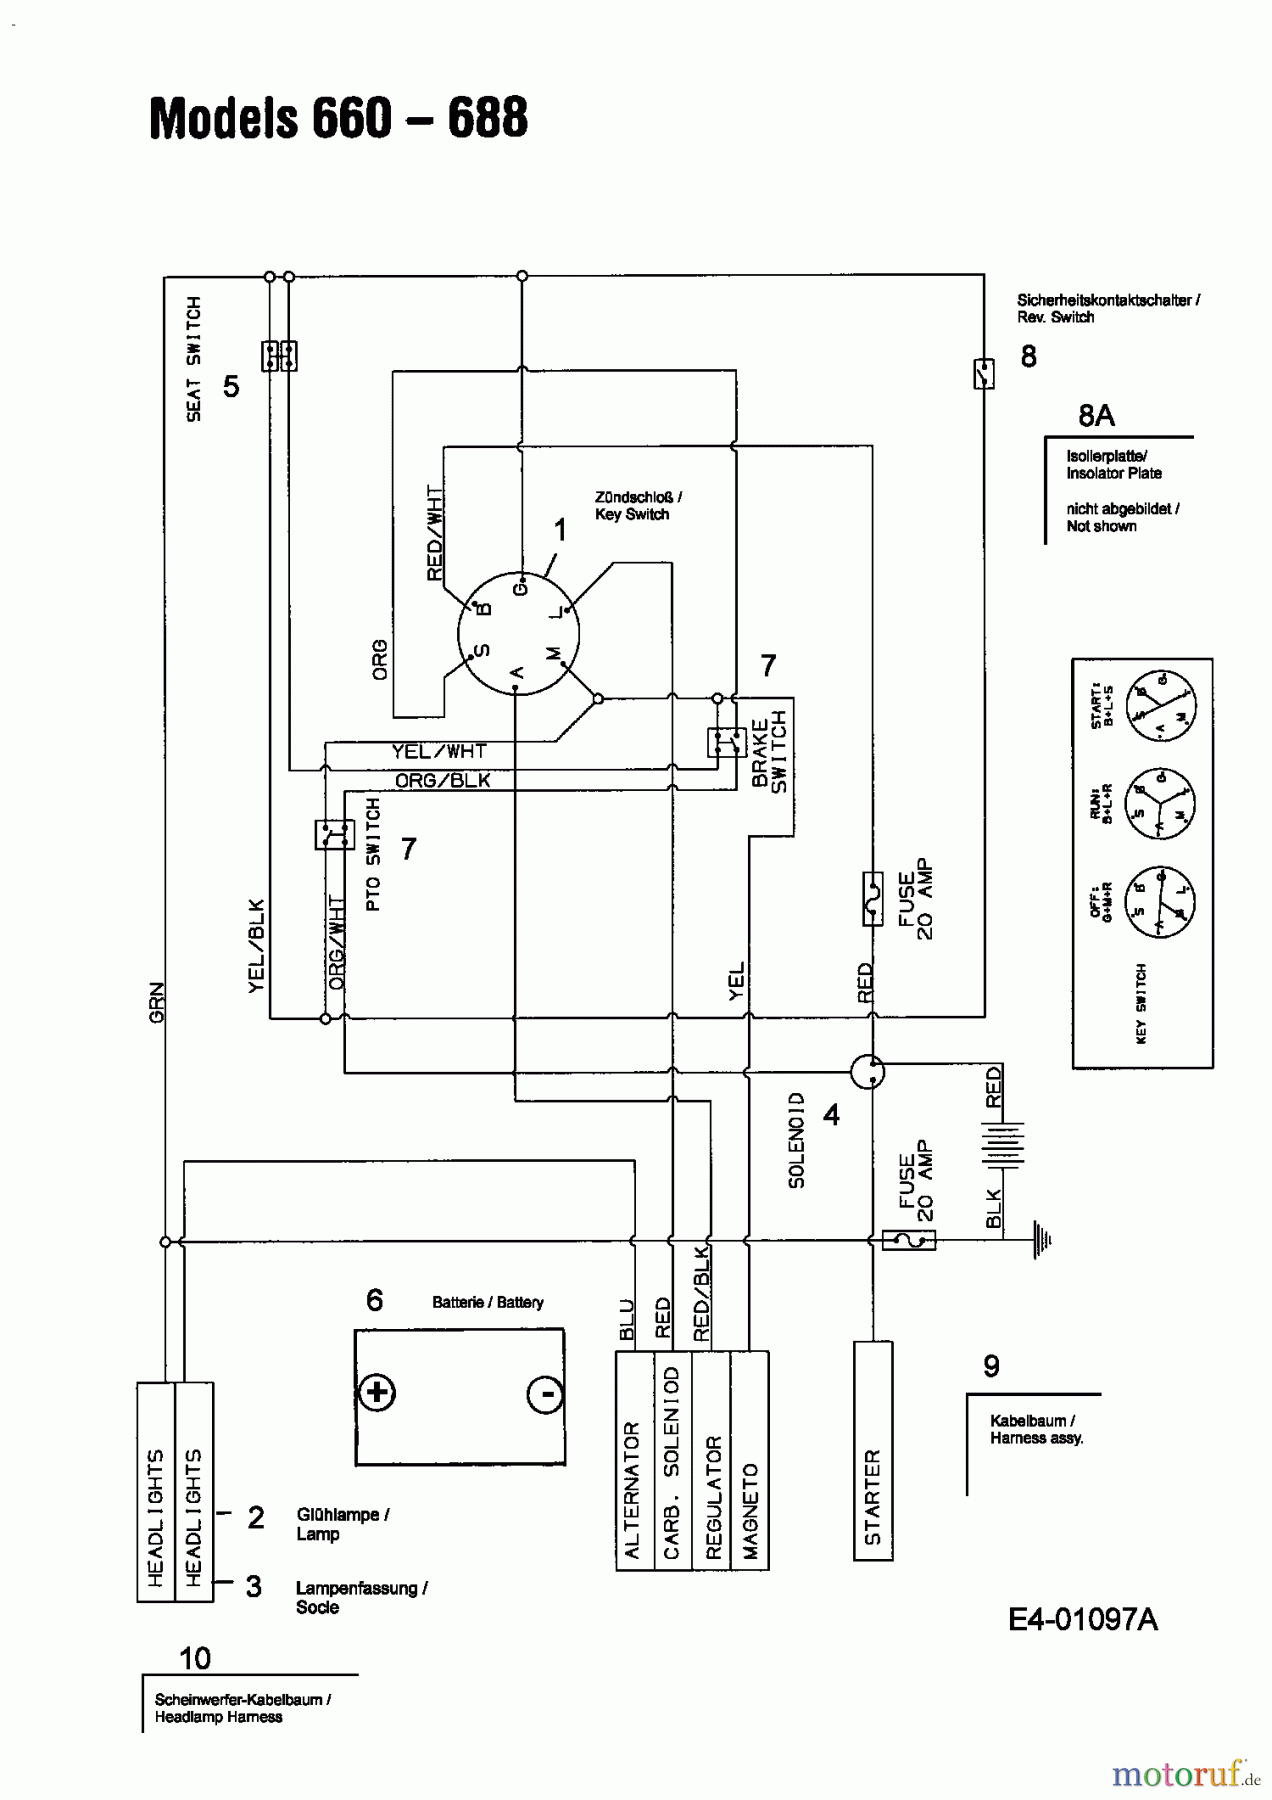  MTD Lawn tractors B 155 13AA688G678  (2003) Wiring diagram